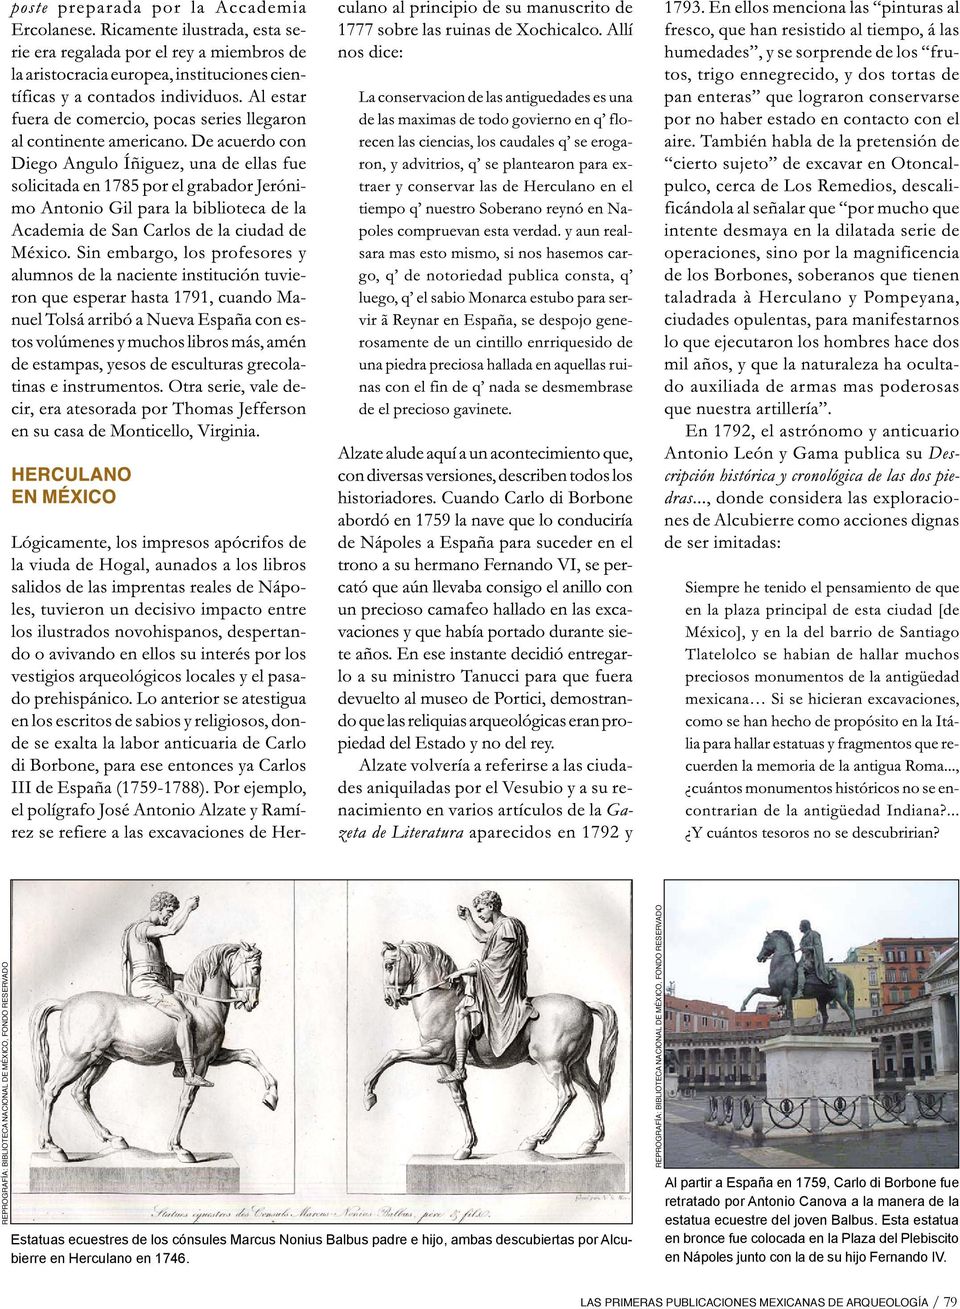 Al partir a España en 1759, Carlo di Borbone fue retratado por Antonio Canova a la manera de la estatua